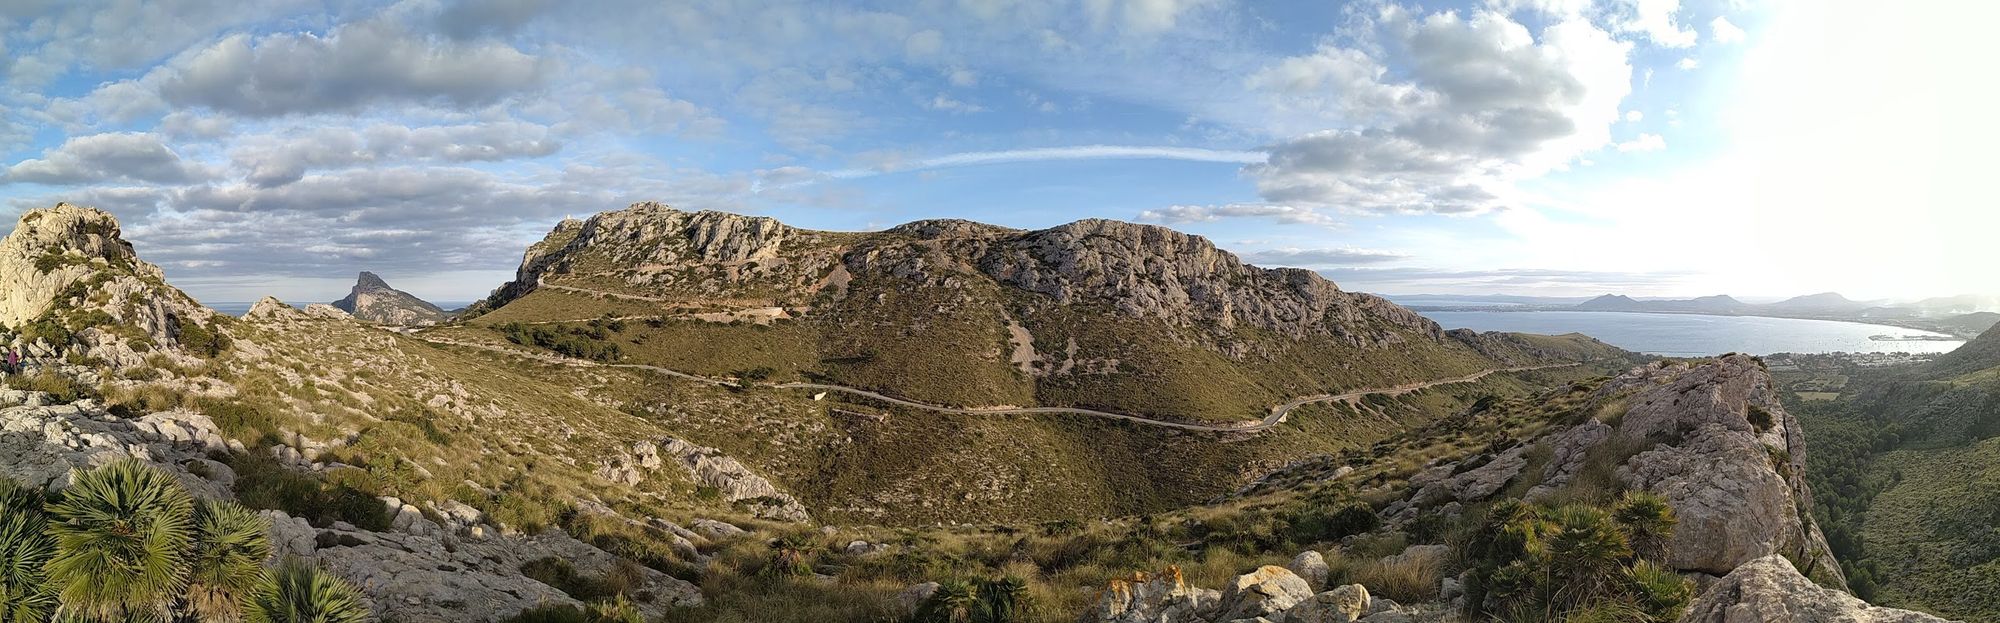 Rock Climbing Mallorca: La Creveta (Formentor)